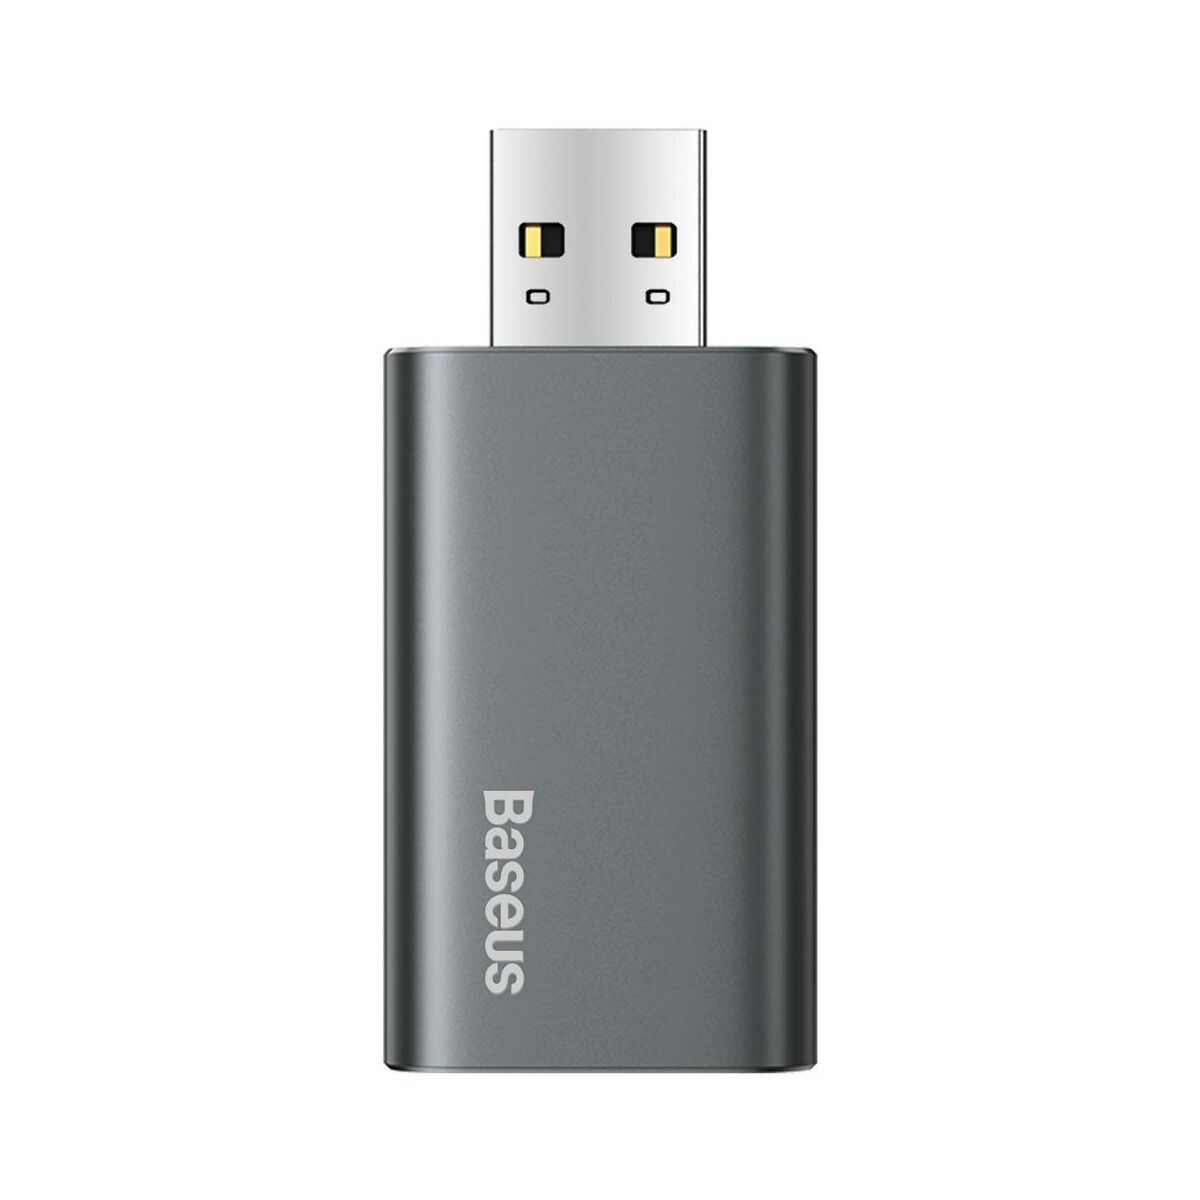 Kép 2/14 - Baseus Audio, Enjoy Flash Drive USB 3.0 töltő funkcióval, alumínium ház, 64GB, fekete (ACUP-C0A)